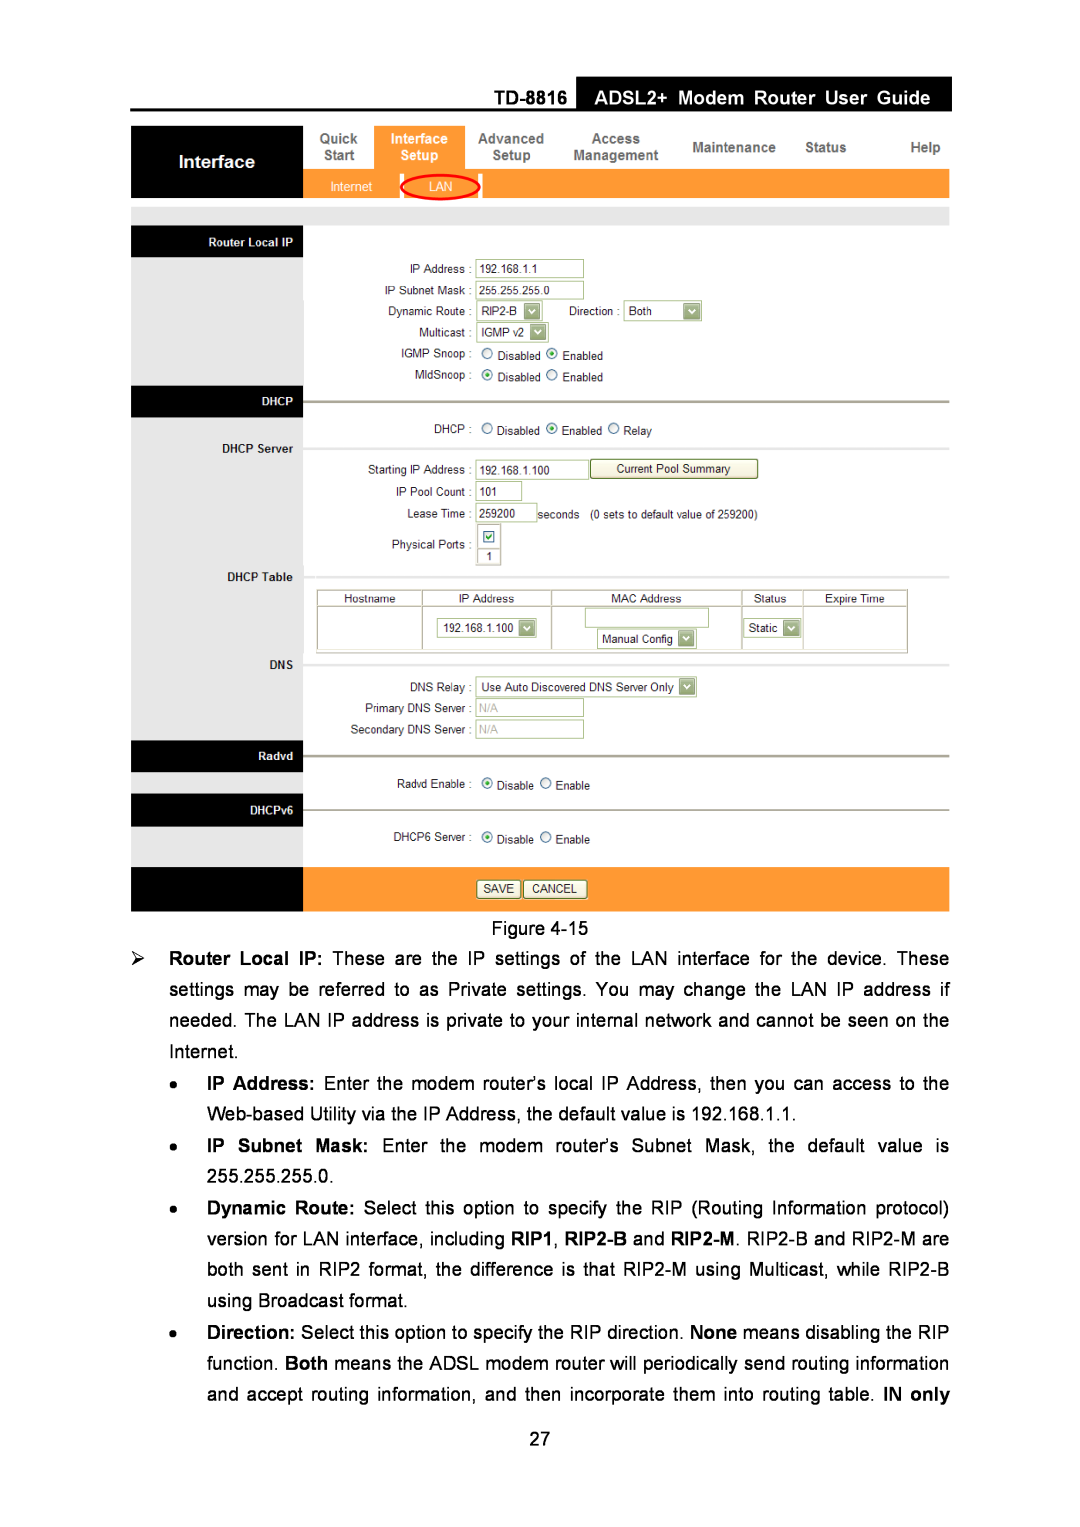 TP-Link TD-8816 manual ADSL2+ Modem Router User Guide 